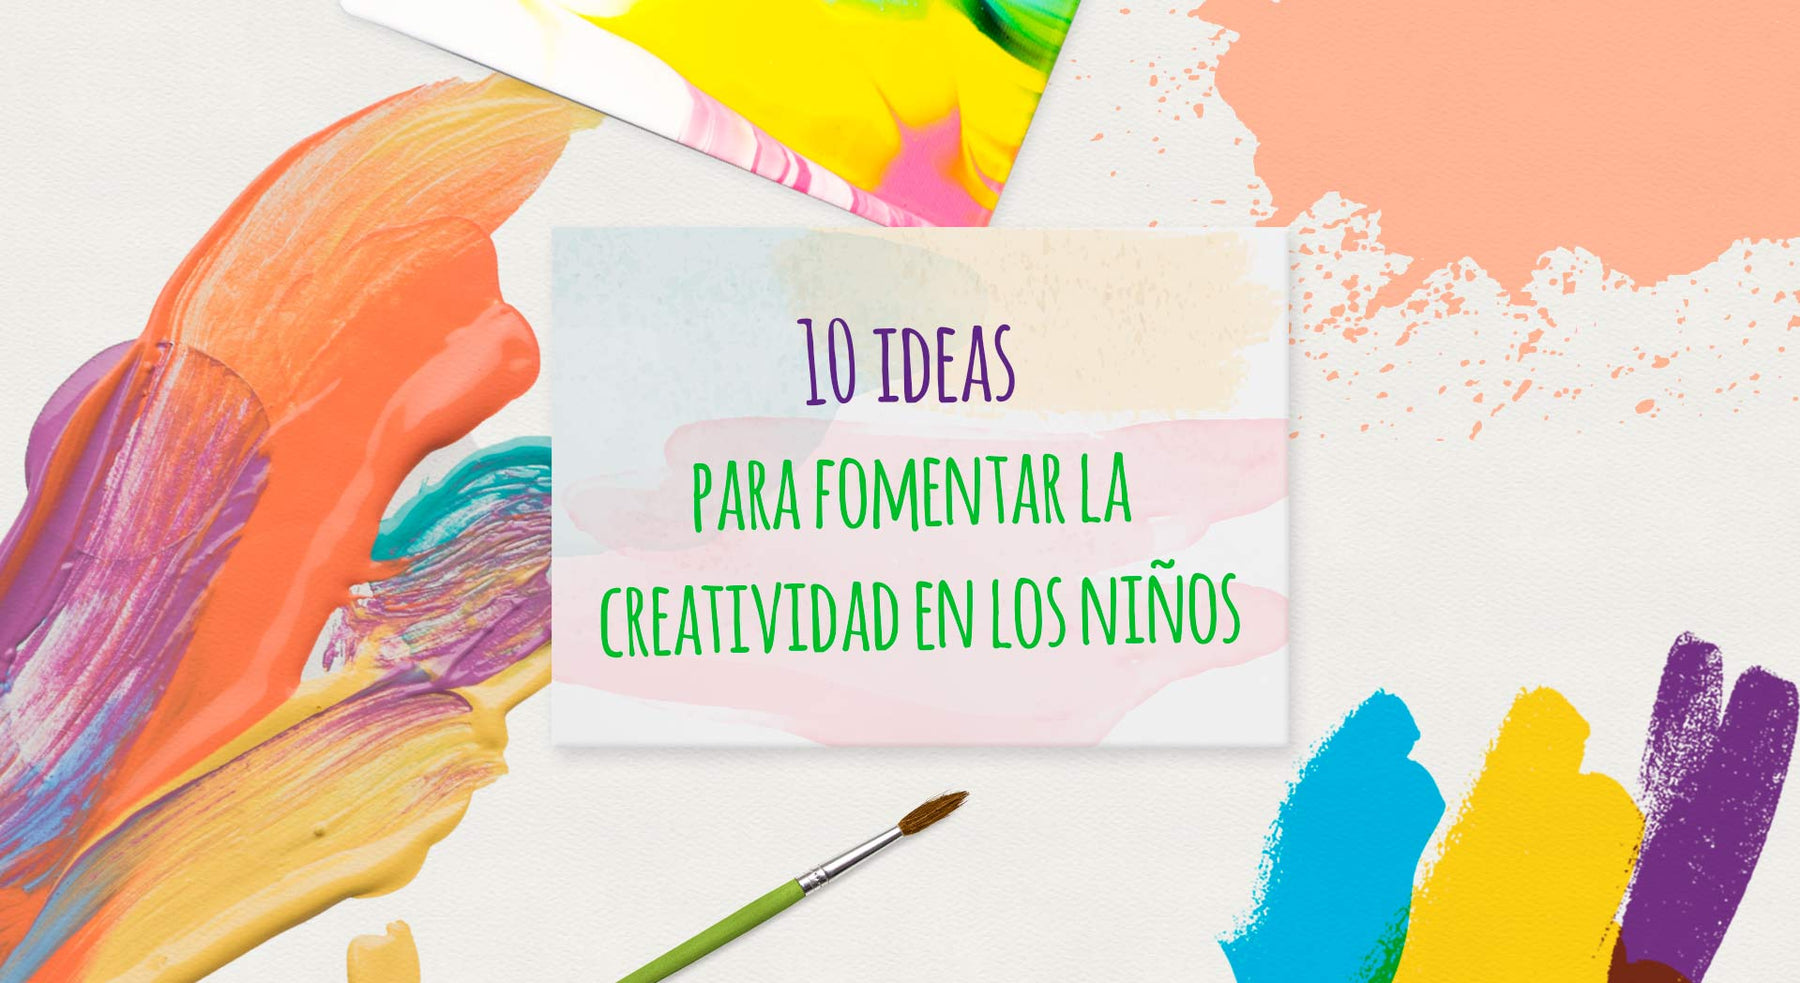 10 ideas para fomentar la creatividad en los niños